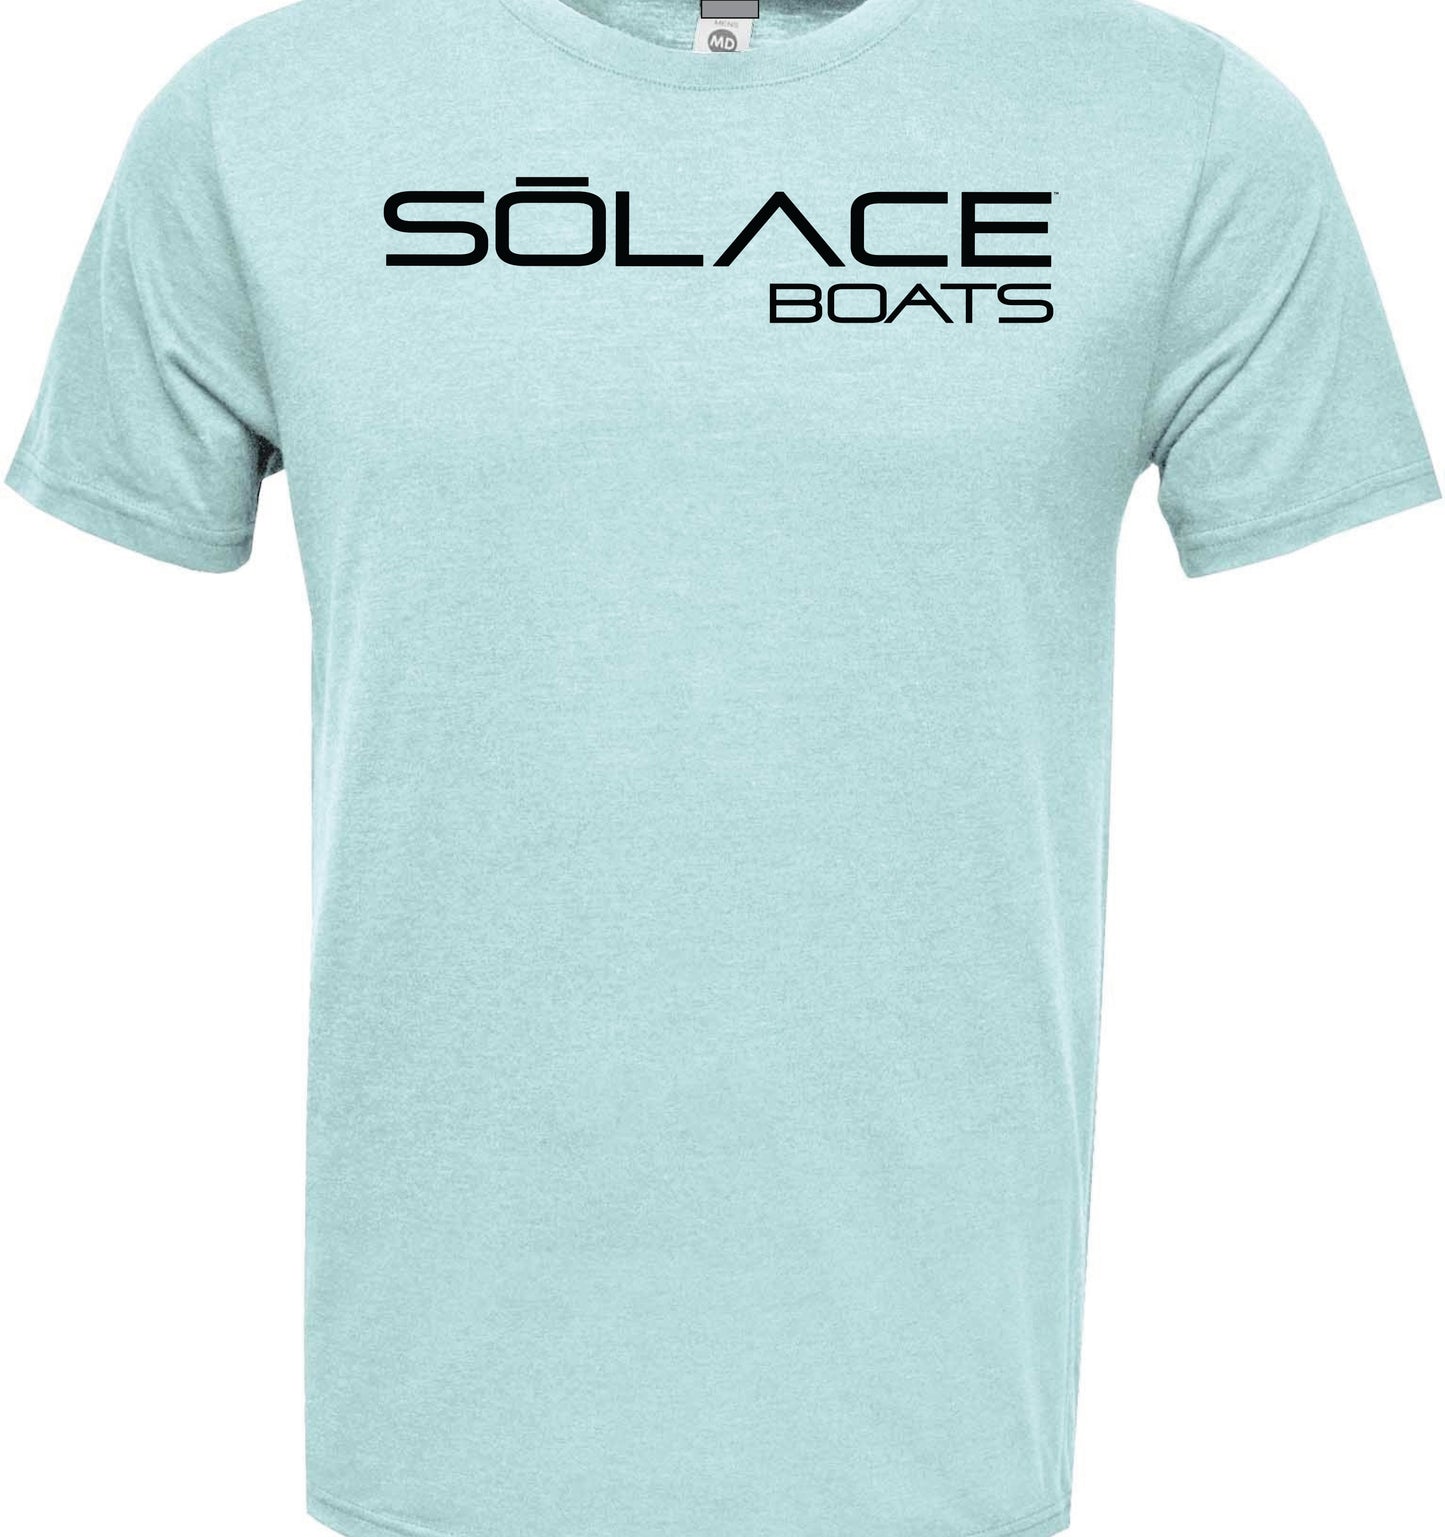 SŌLACE Boats Short Sleeve Performance Tee - Mojo Sportswear Company